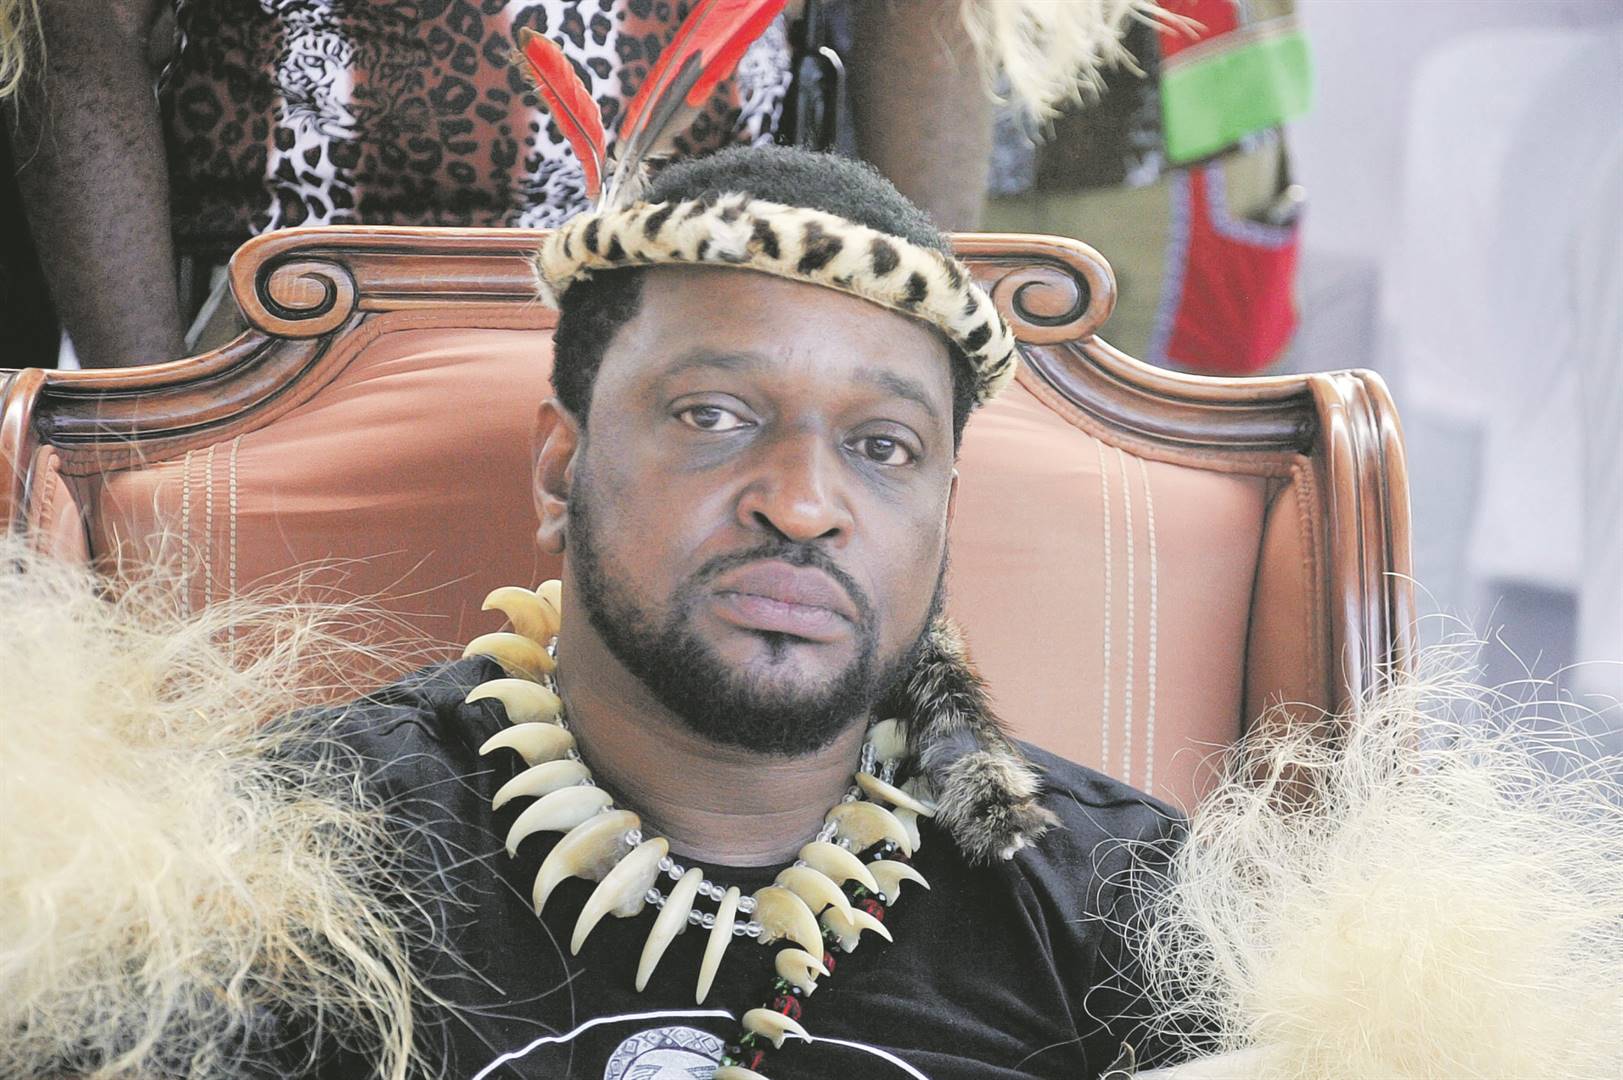 King Misuzulu asks Mzansi for prayers. Photo by Jabulani Langa